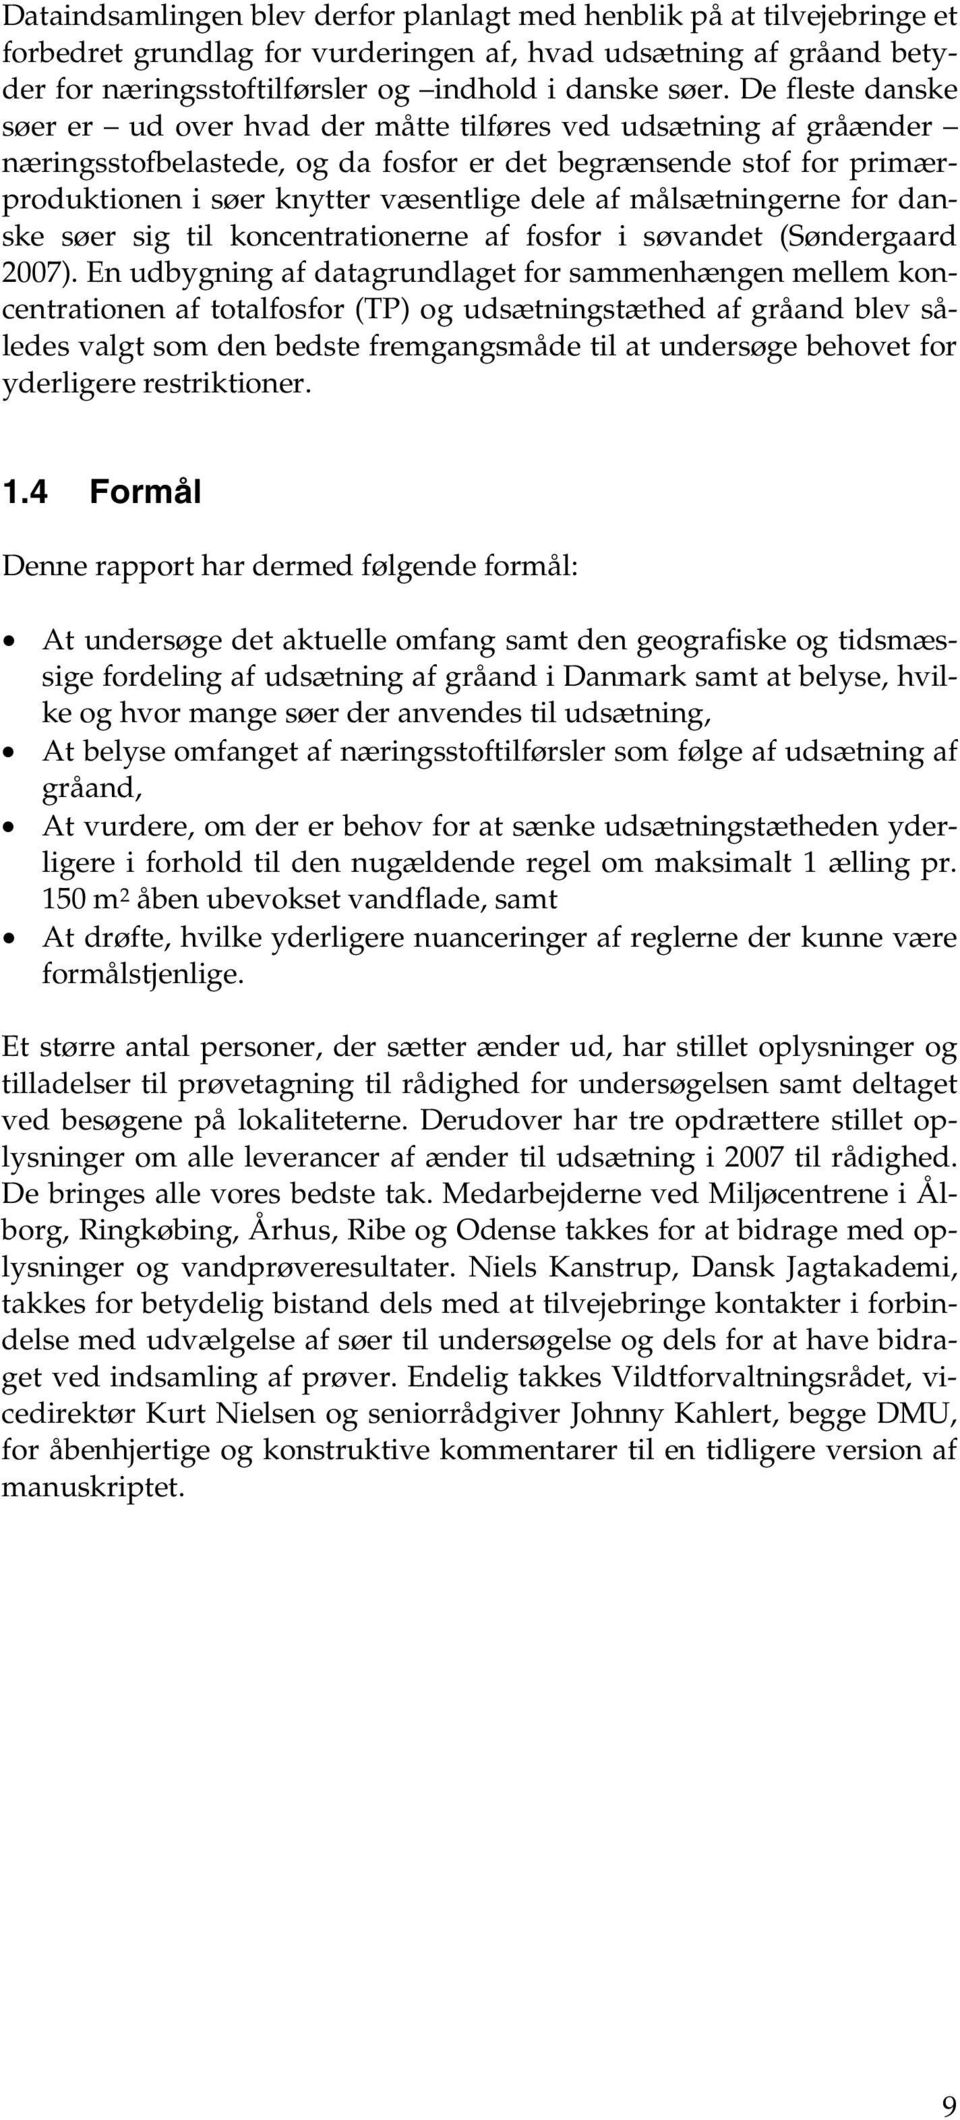 målsætningerne for danske søer sig til koncentrationerne af fosfor i søvandet (Søndergaard 2007).